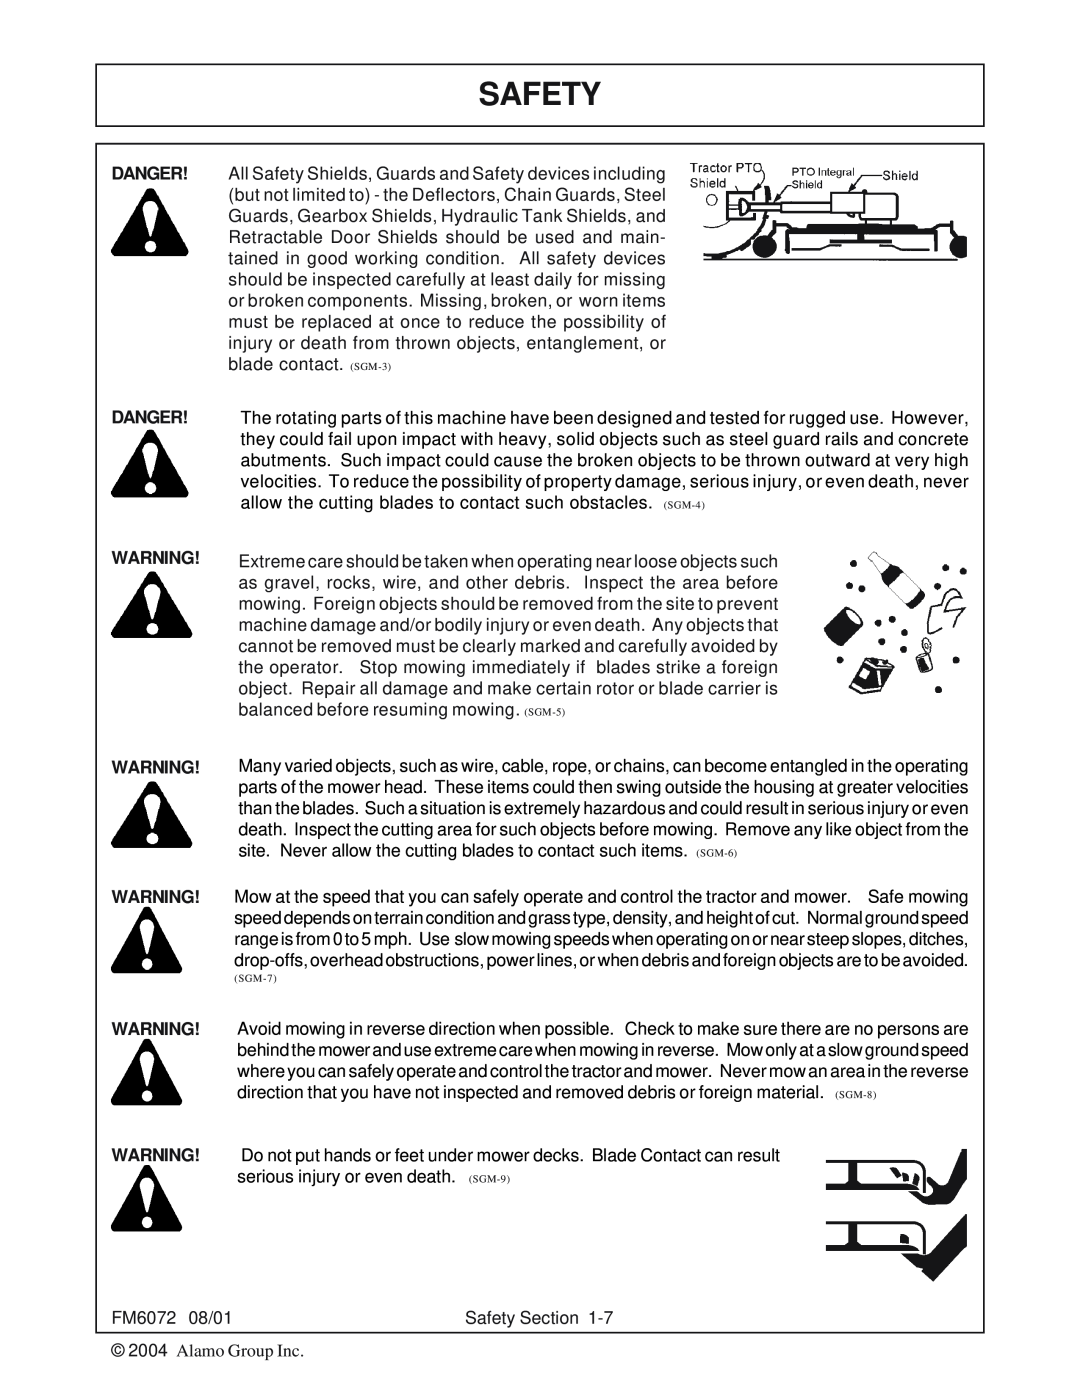 Servis-Rhino FM60/72 manual Danger Danger, FM6072 08/01 